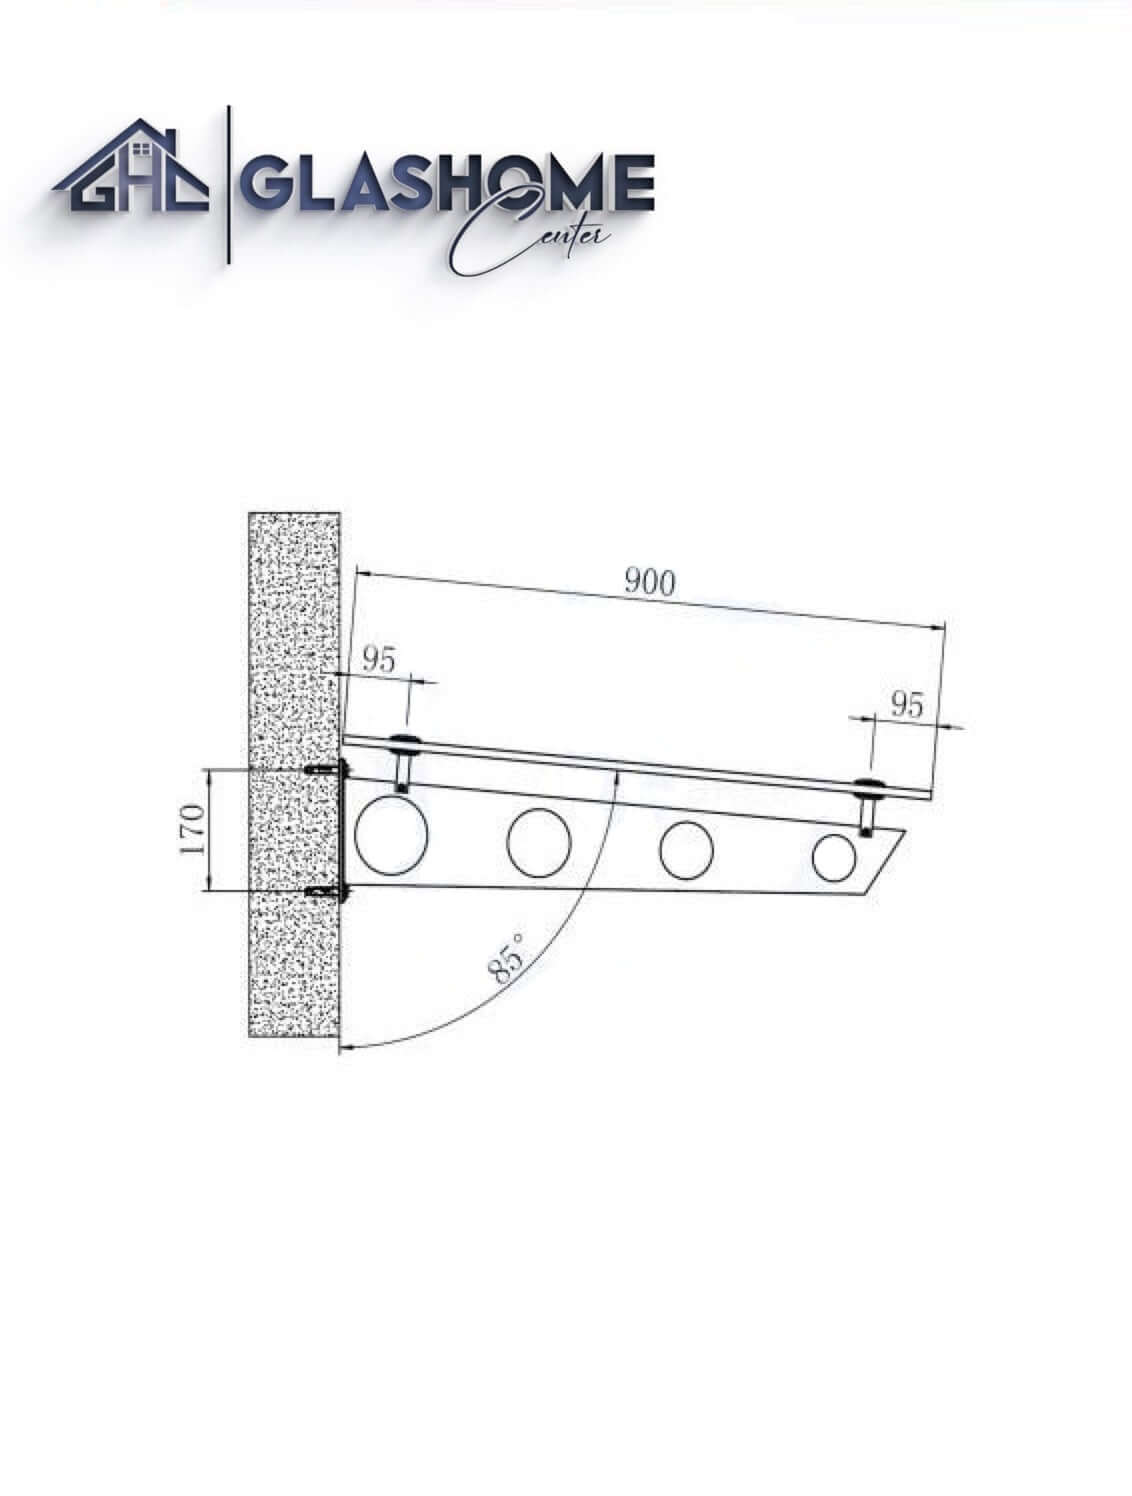 GlasHomeCenter - Glasvordach - Grauglas - 200x90cm - 13.1mm VSG - inkl. 2 schwarze Edelstahlhalterungen Variante "Stockholm"